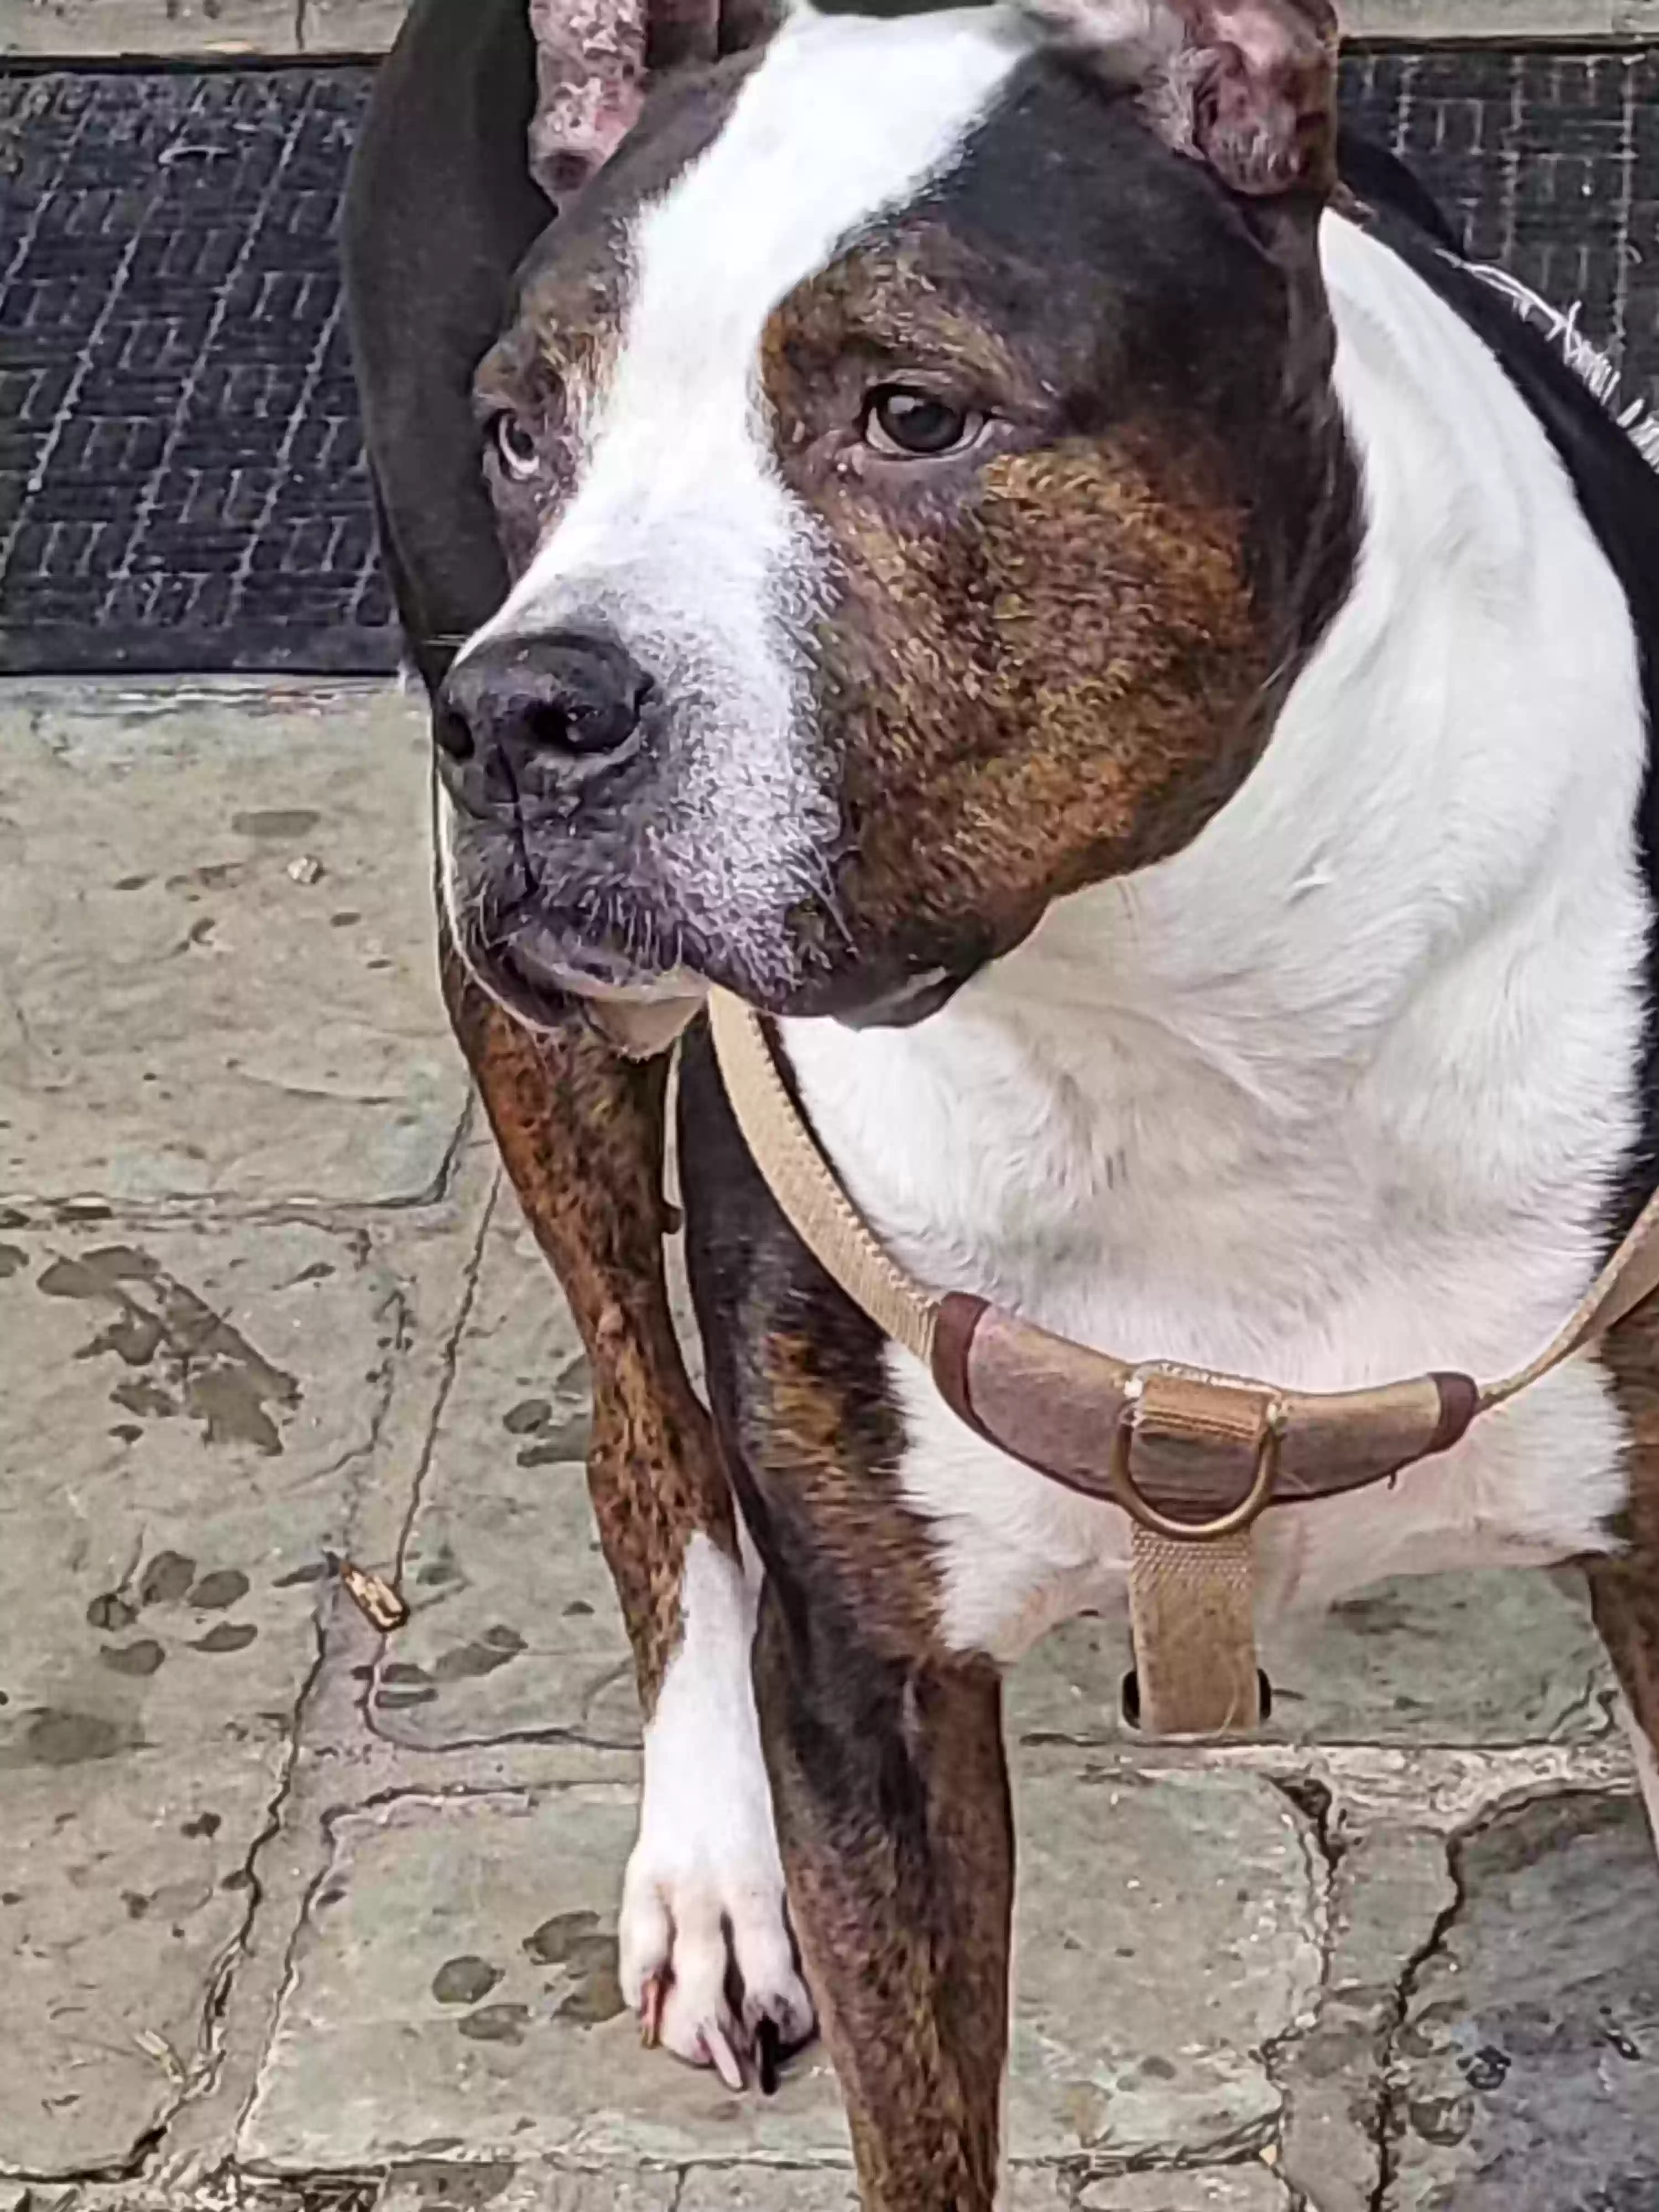 adoptable Dog in Dobbs Ferry,NY named Tyson